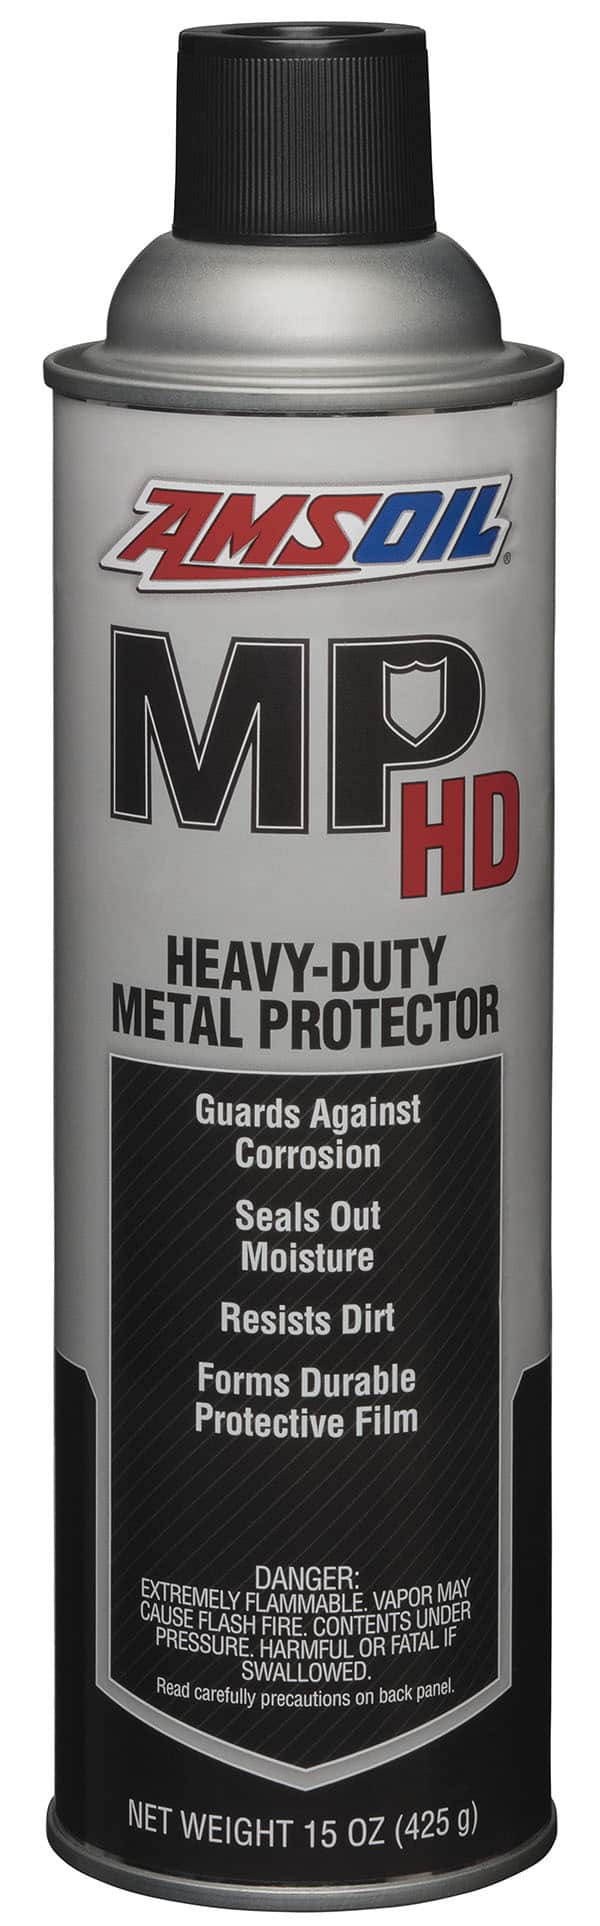 Heavy-Duty Metal Protector